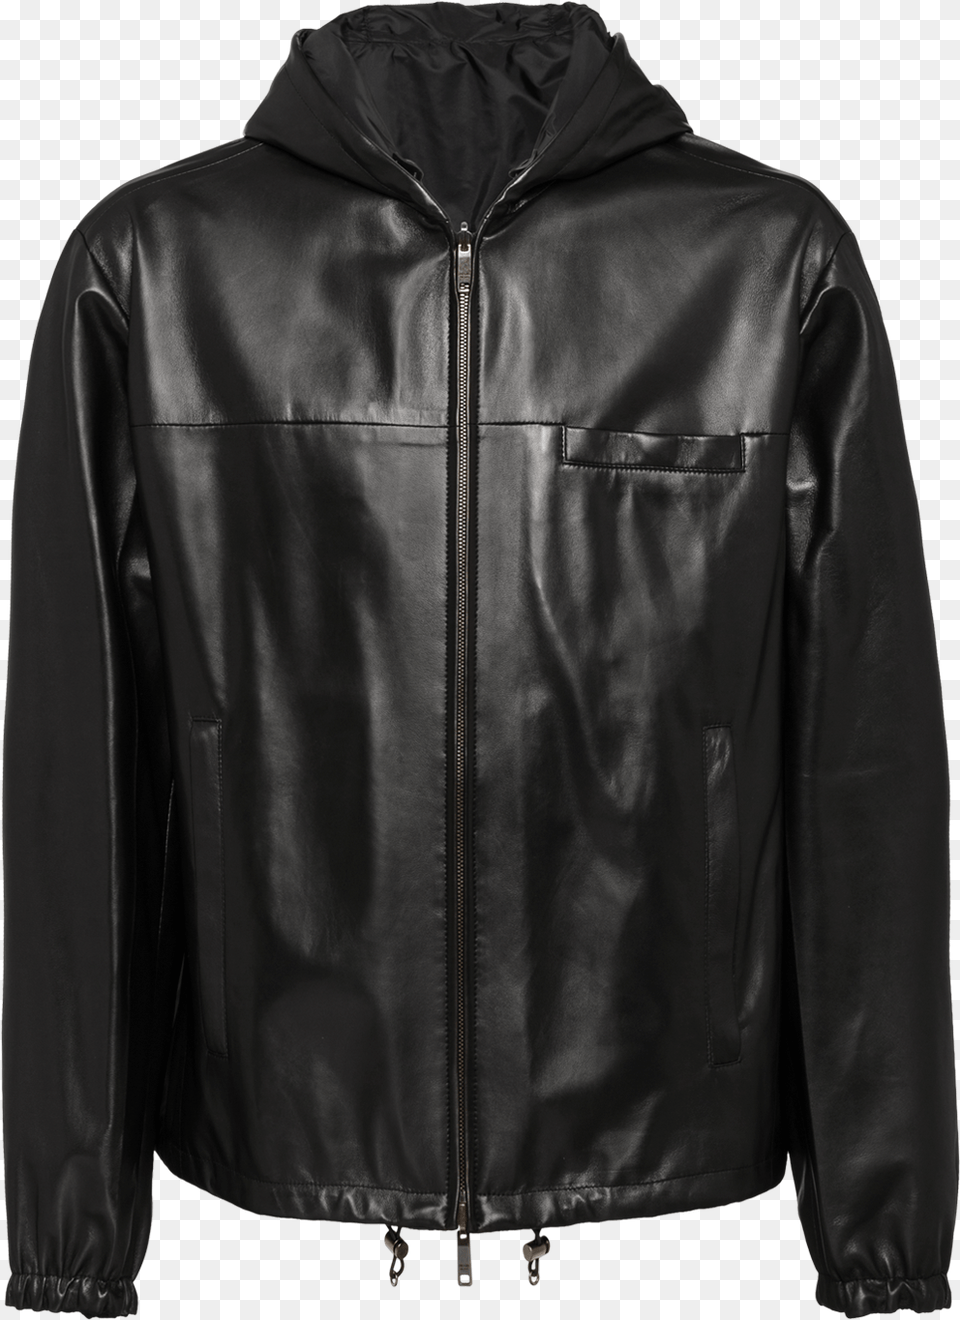 Jacket, Clothing, Coat, Leather Jacket Png